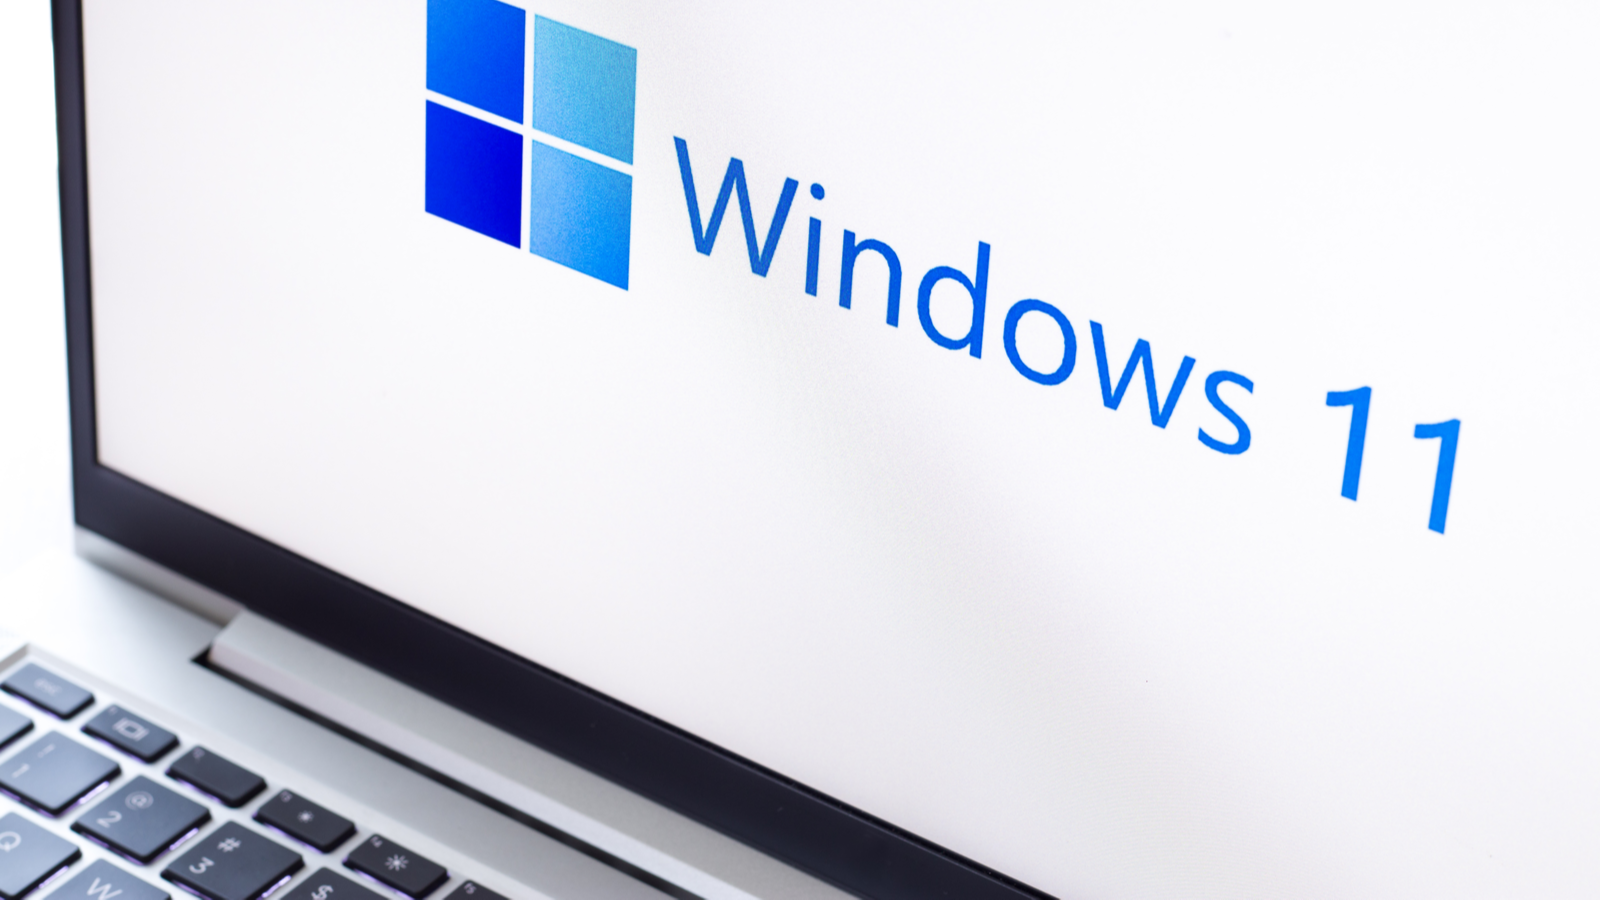 Cận cảnh logo Windows 11 trên máy tính xách tay